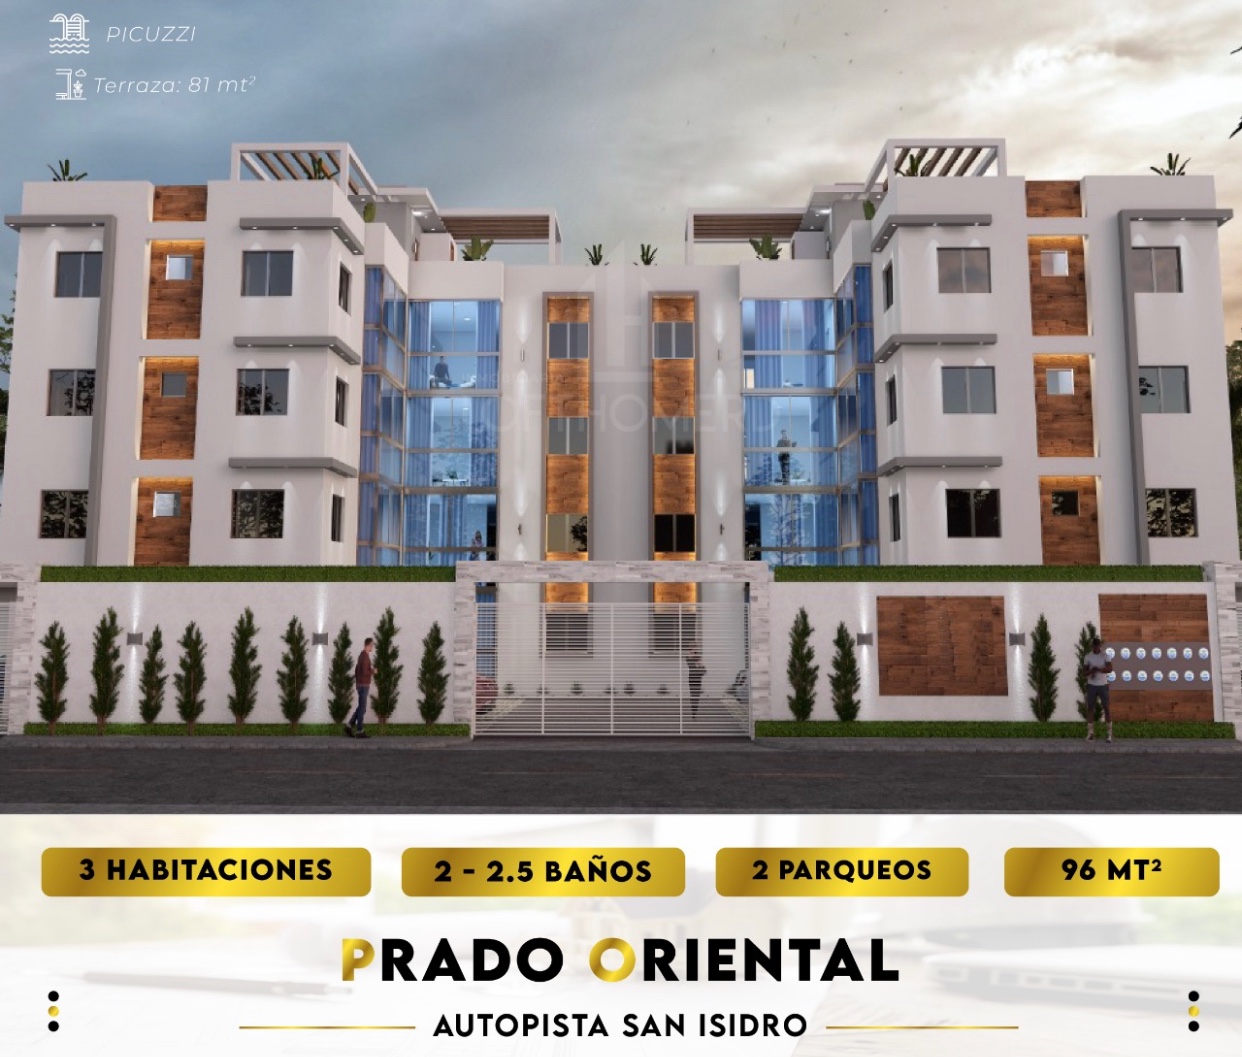 apartamentos - Venta de apartamentos en la autopista de san Isidro prado oriental  0